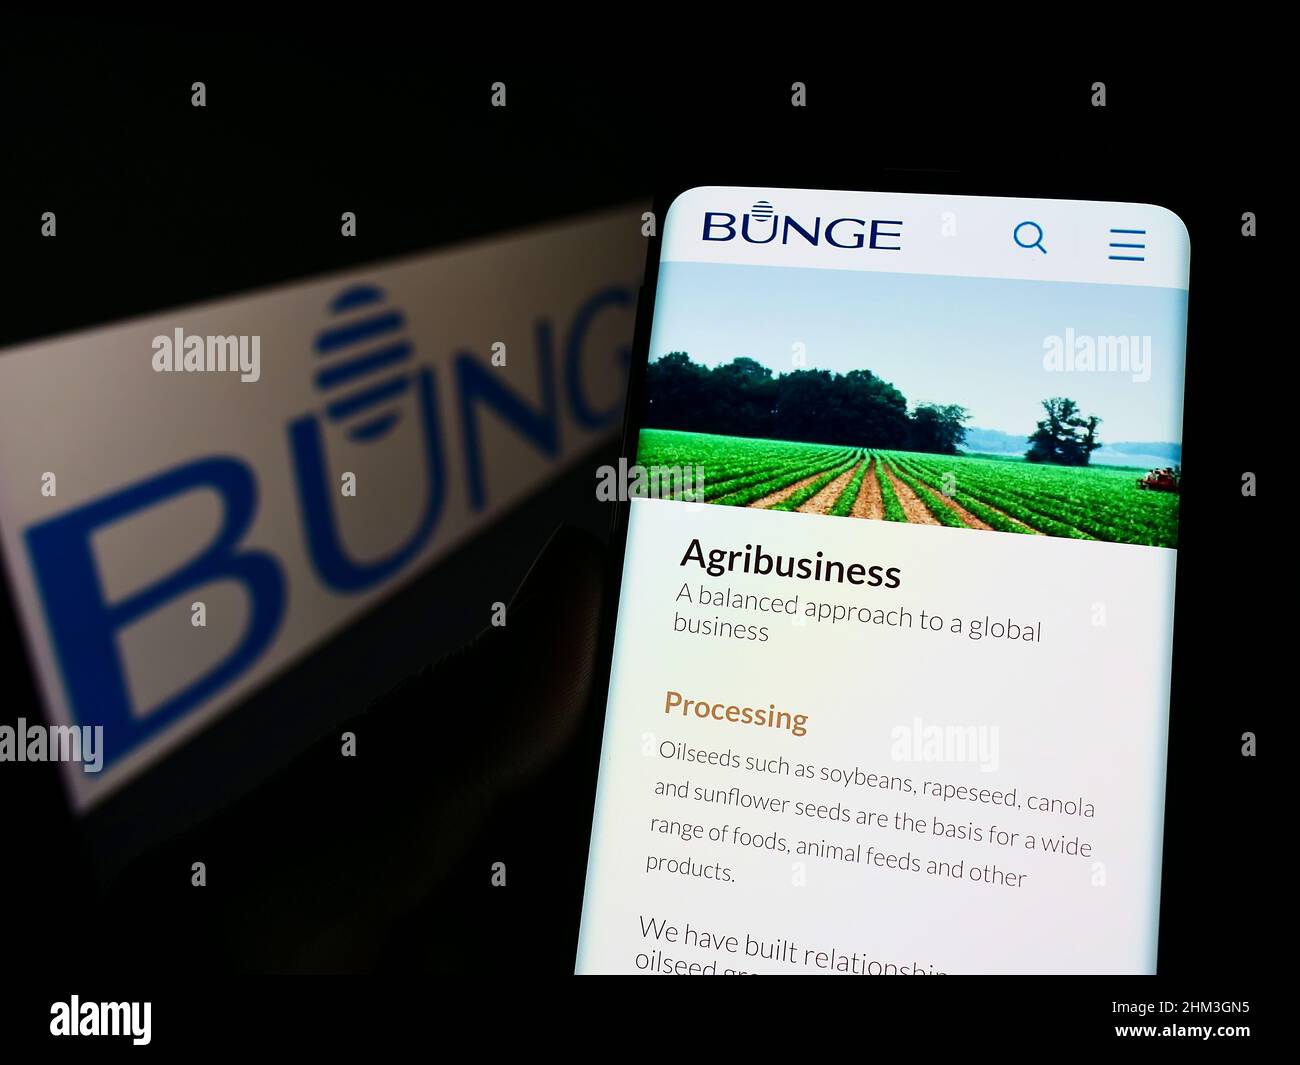 Persona sosteniendo un smartphone con página web de la empresa agroindustrial y alimentaria Bunge Limited en la pantalla frente al logotipo. Enfoque en el centro de la pantalla del teléfono. Foto de stock